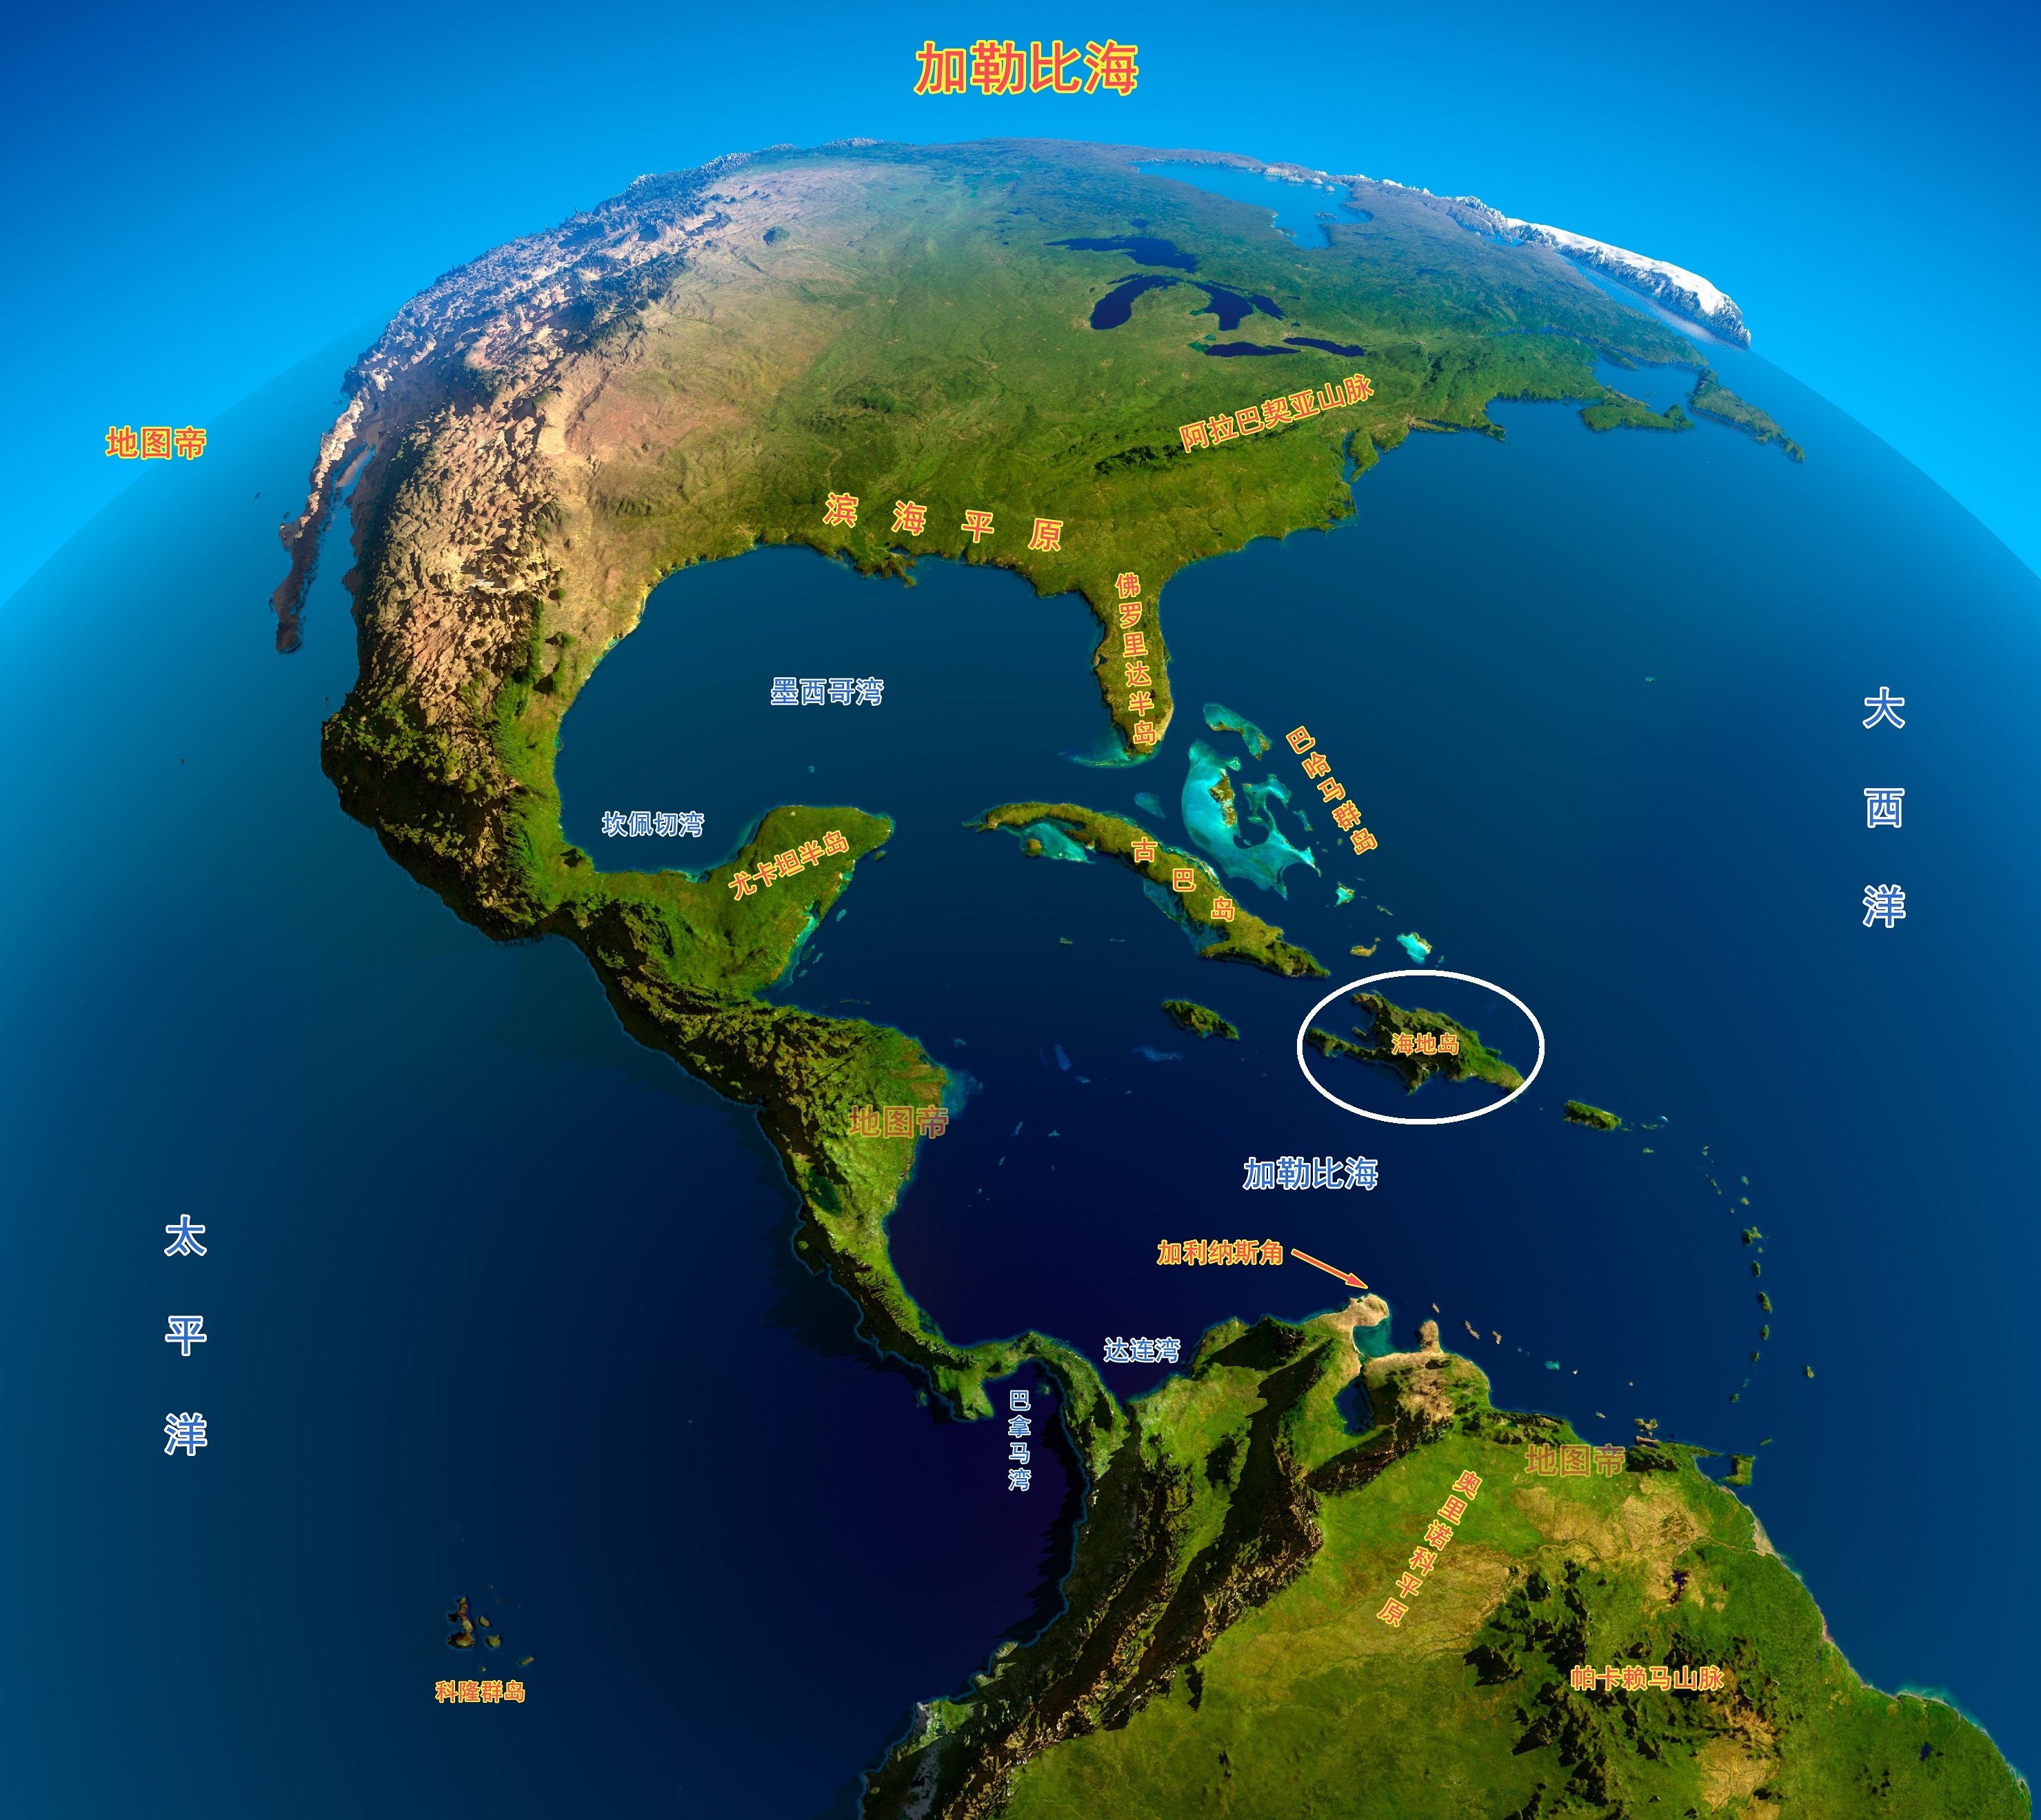 海地与多米尼加在一个岛上,为何分成两个国家